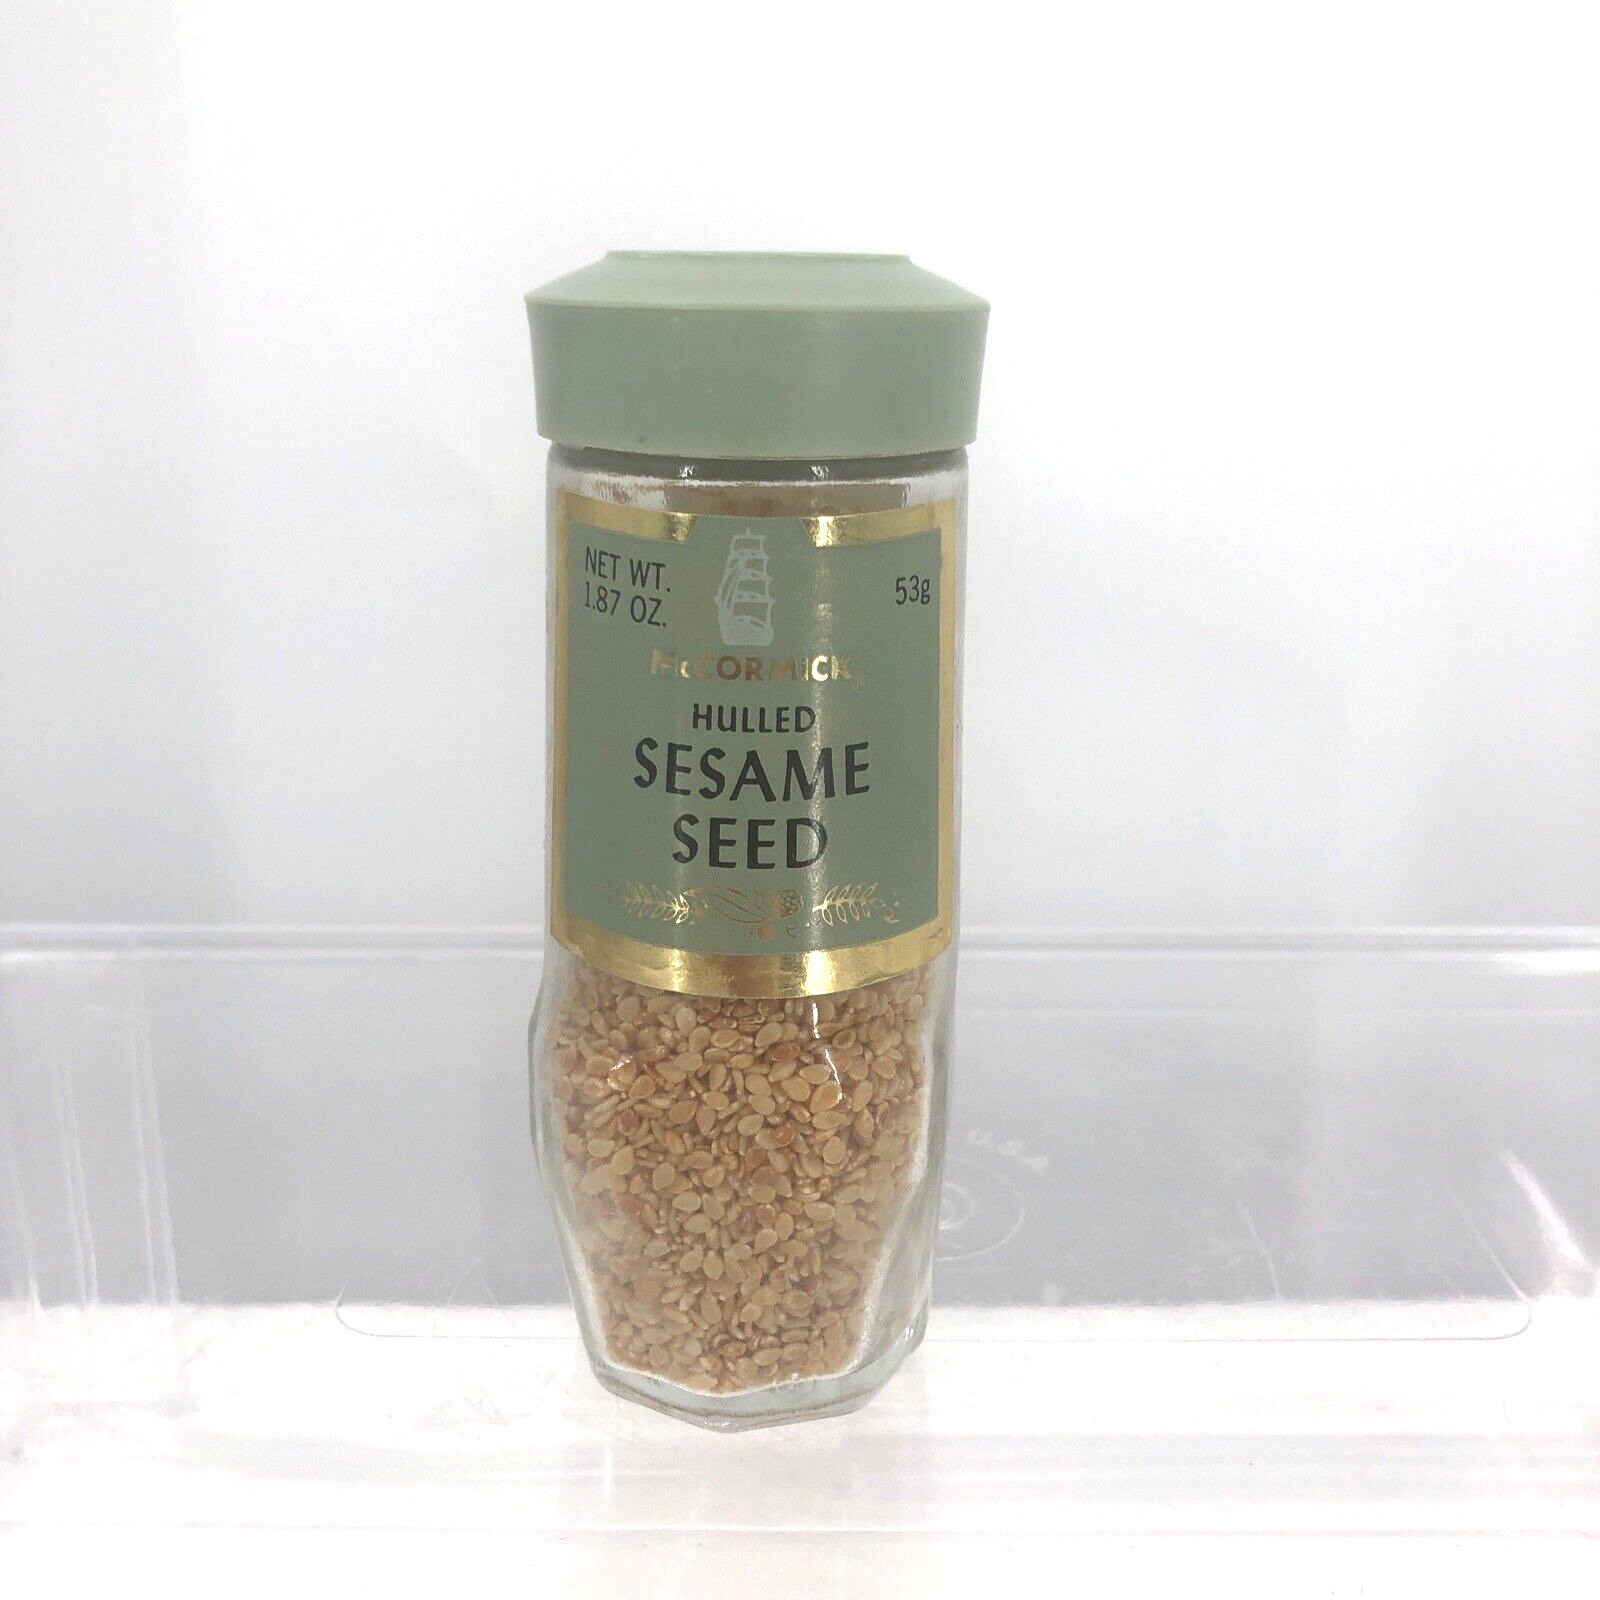 VTG Hulled Sesame Seed McCormick Spice Jar Glass Bottle 70s Green Lid Prop Exp